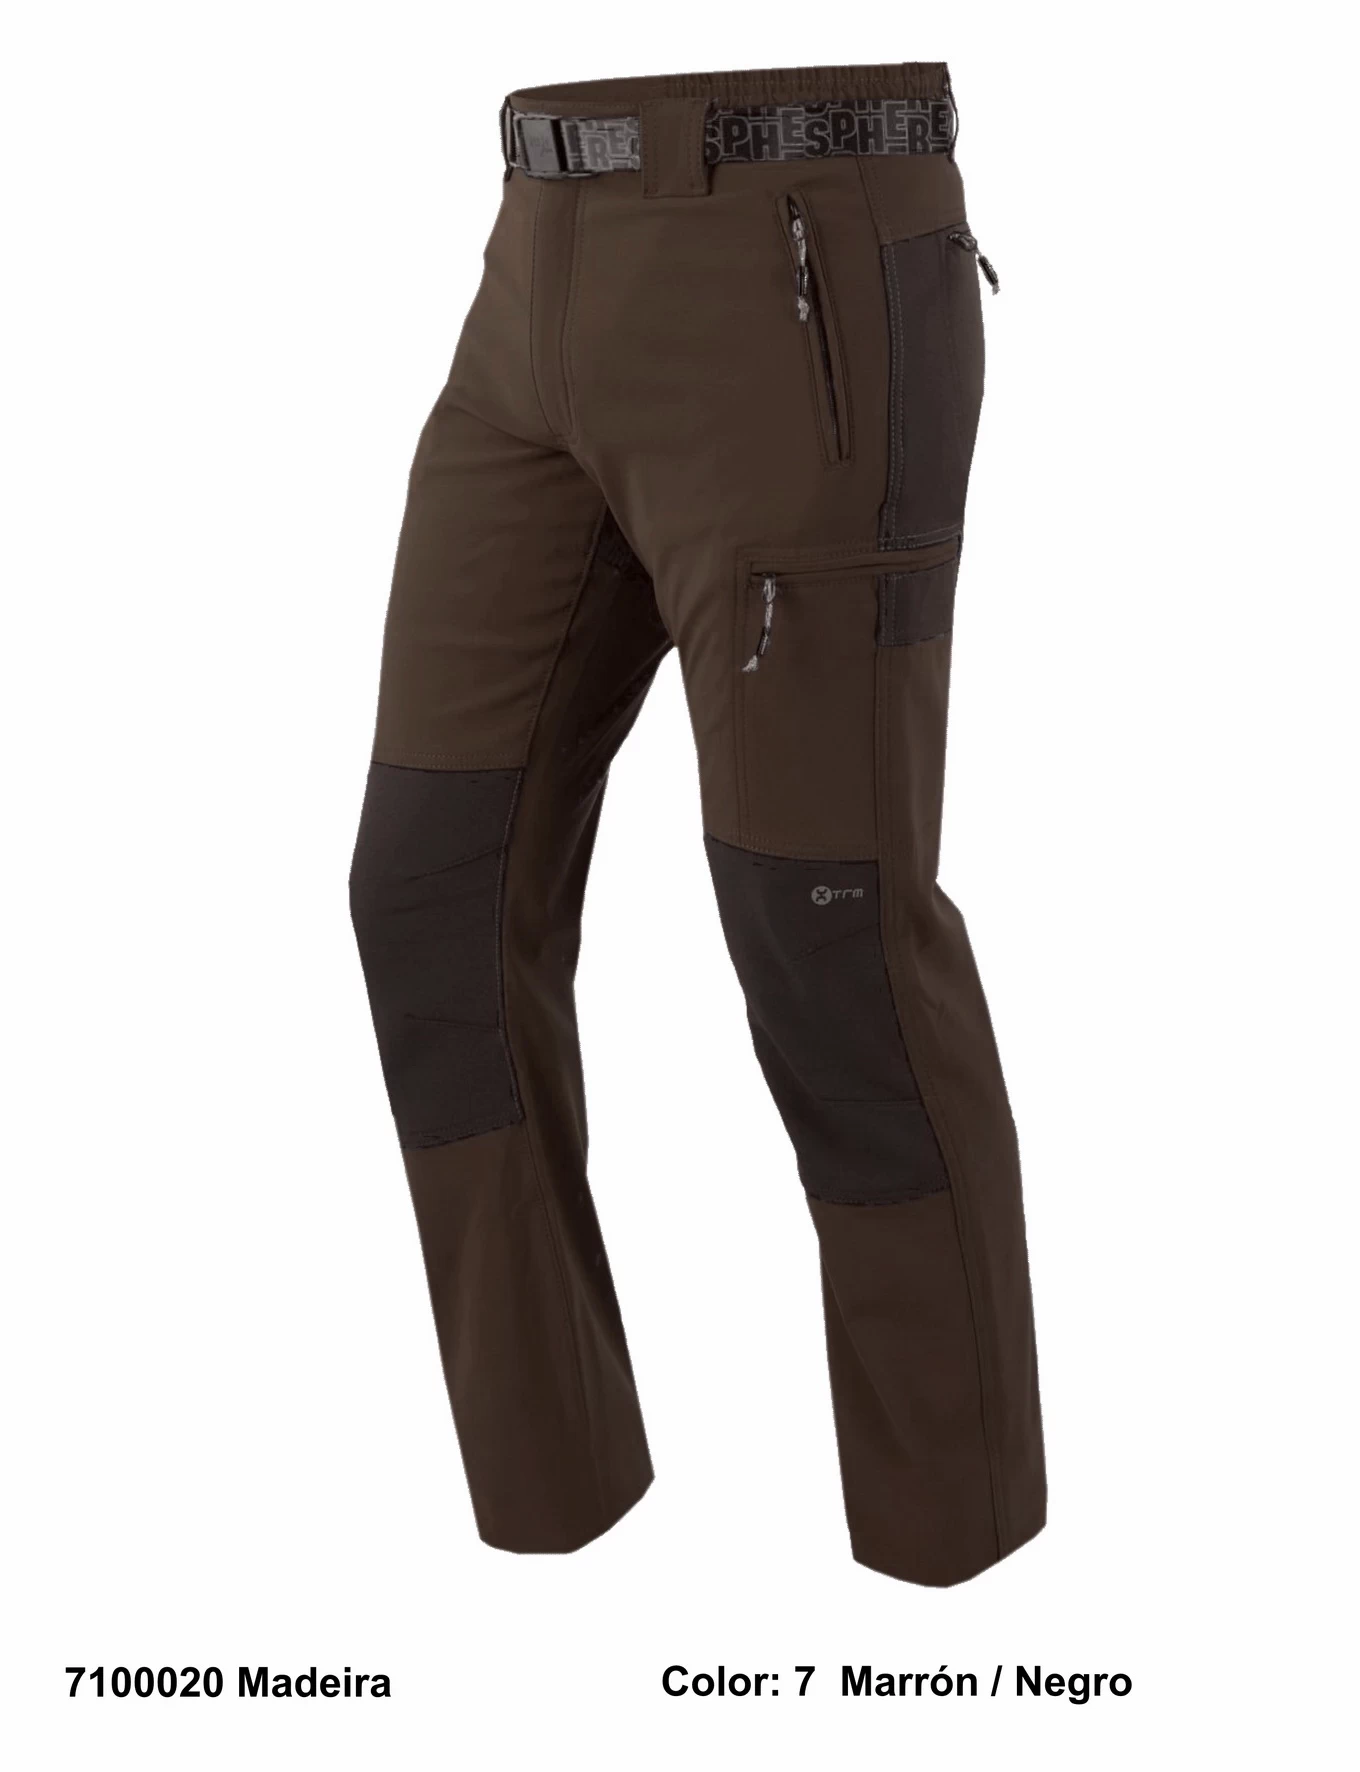 Sphere Pro  Polyester/Elastane Brushed Trekking Pants for Men